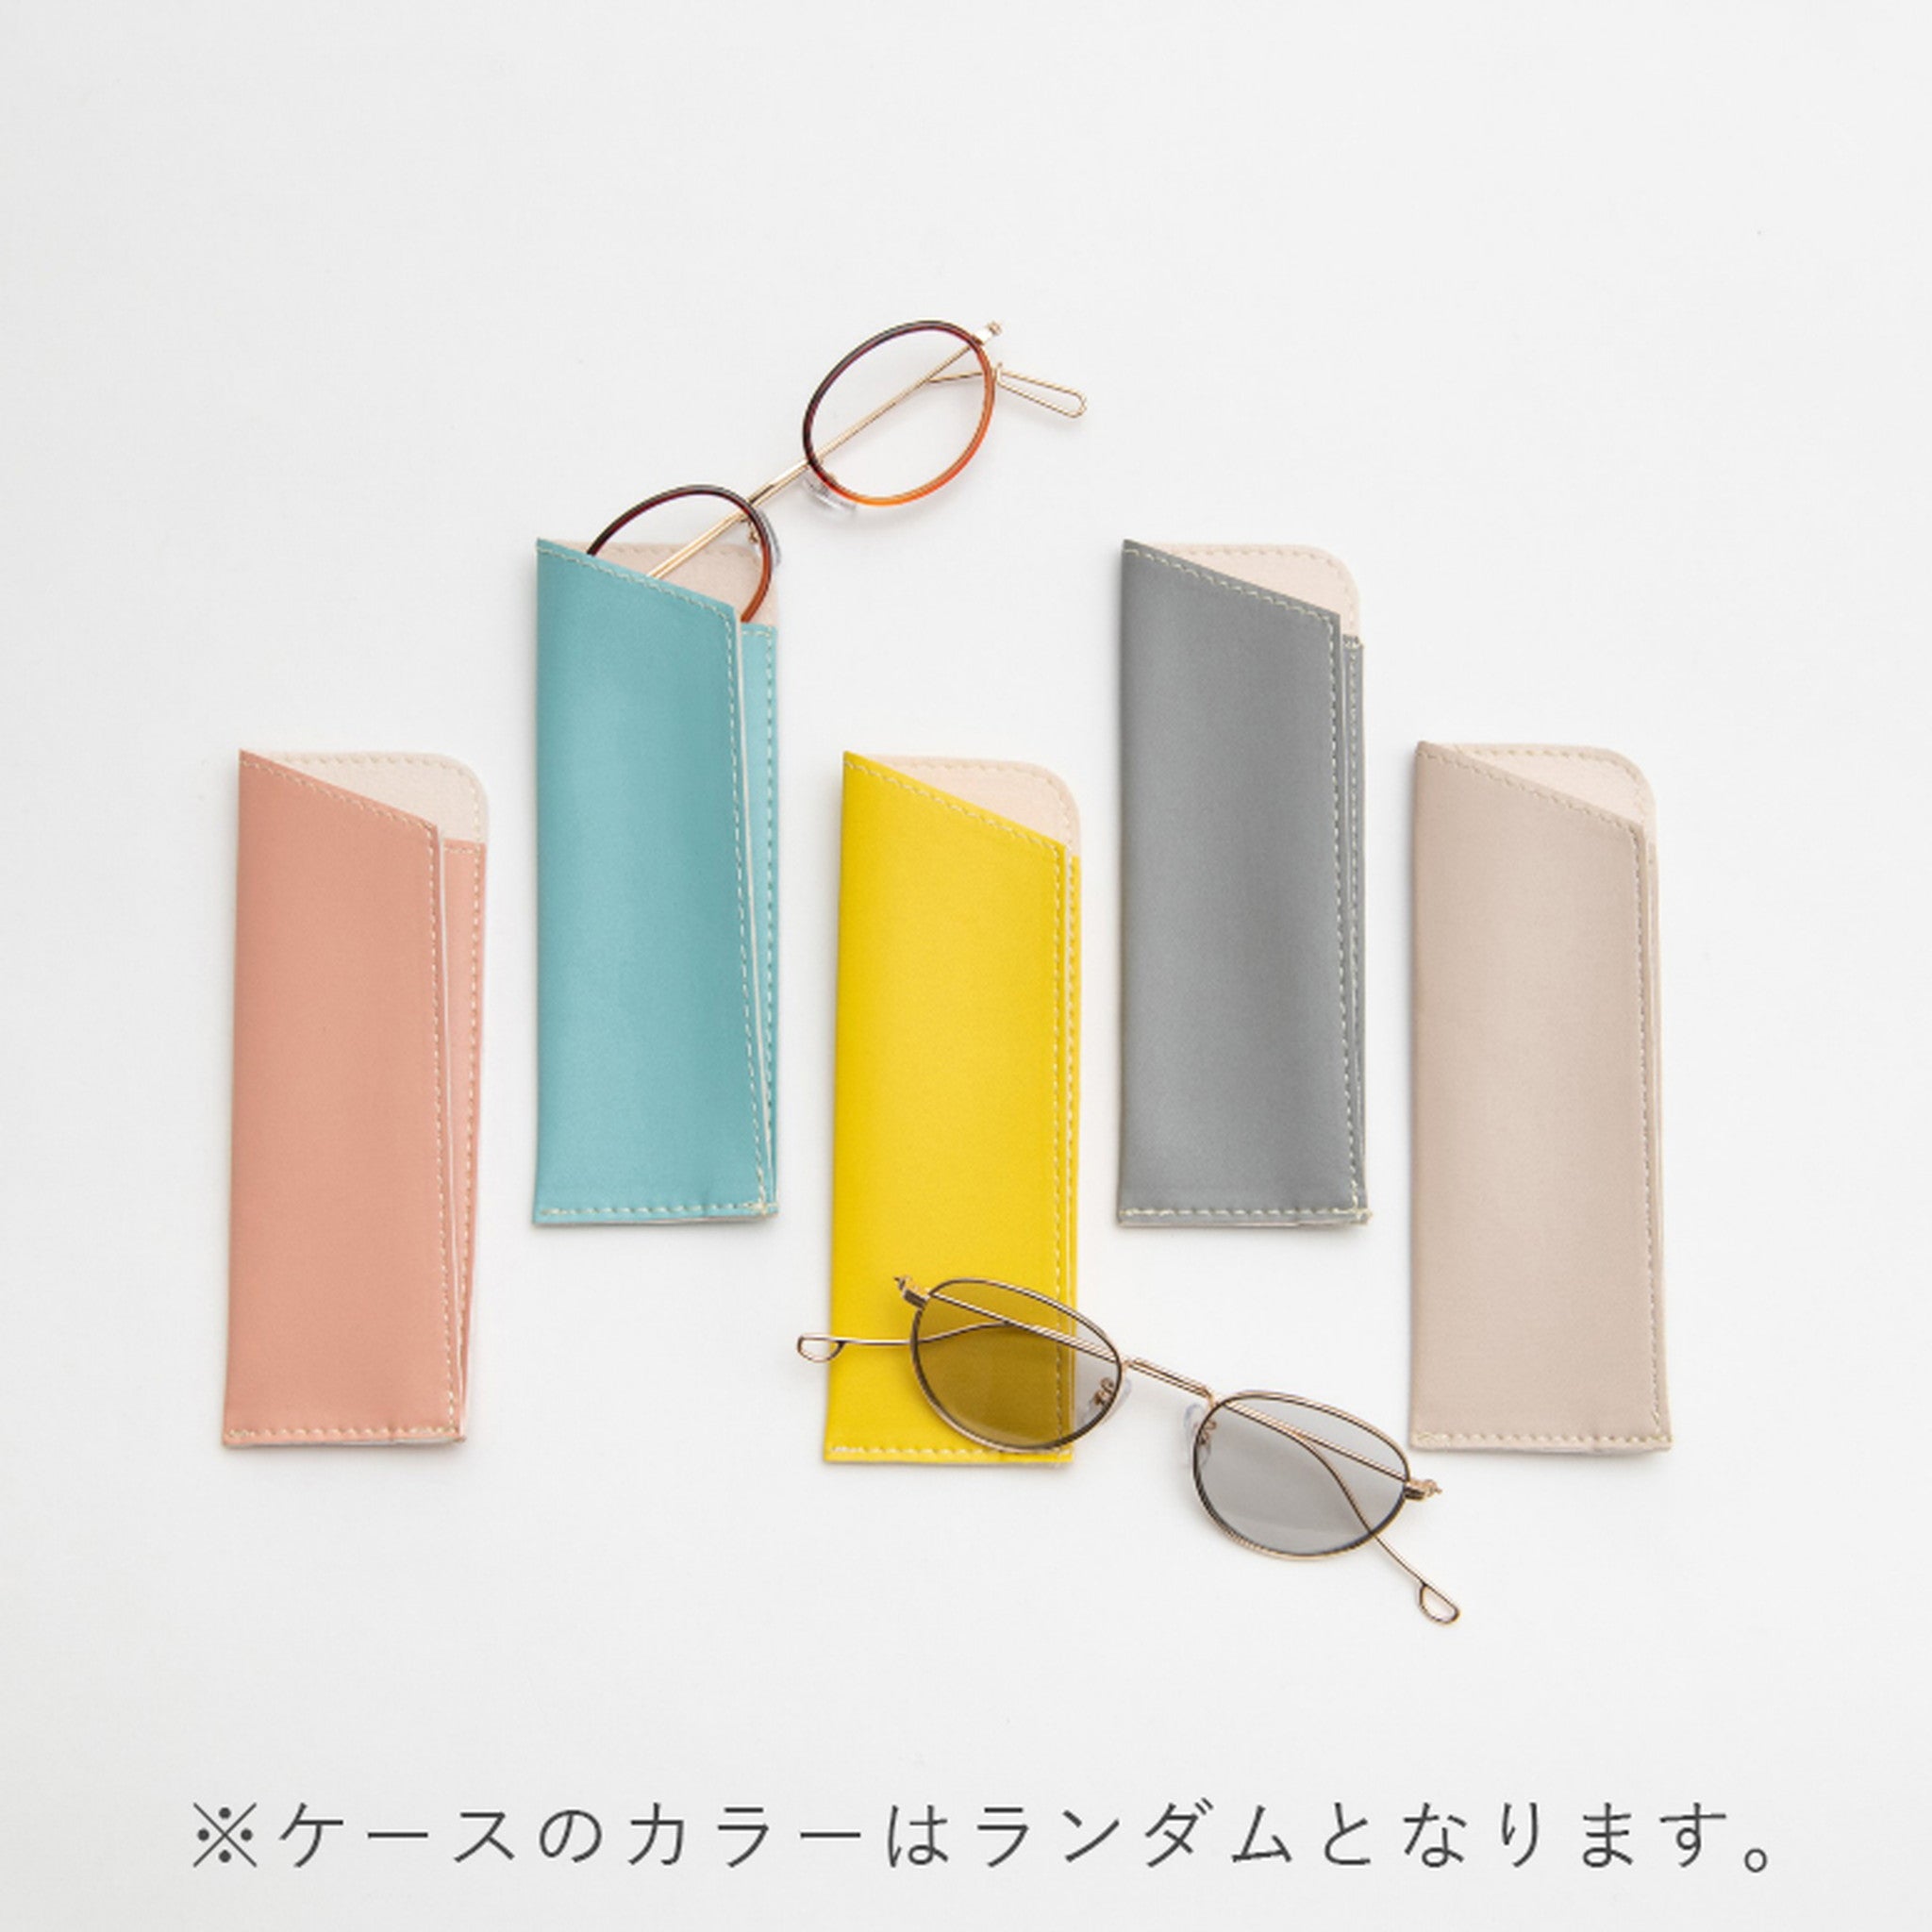 【Ciqi】EVANS サングラス Sherbet Light Gray Lens sunglasses(エバンス シャーベット ライトグレーレンズ)